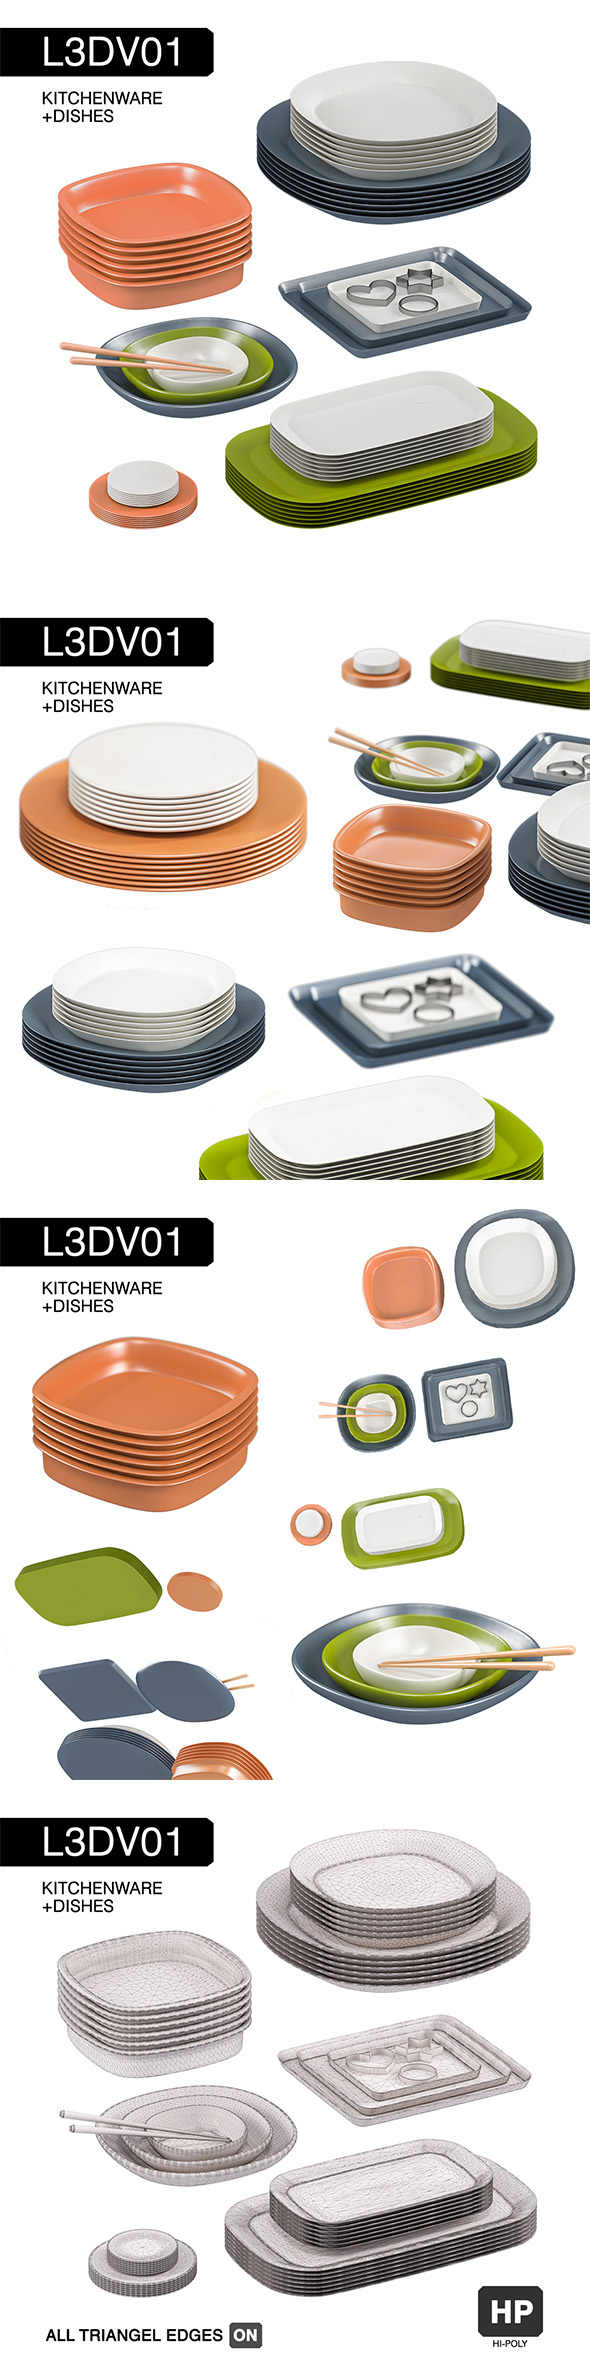 L3DV01G02 - kitchen - 3Docean 31053412